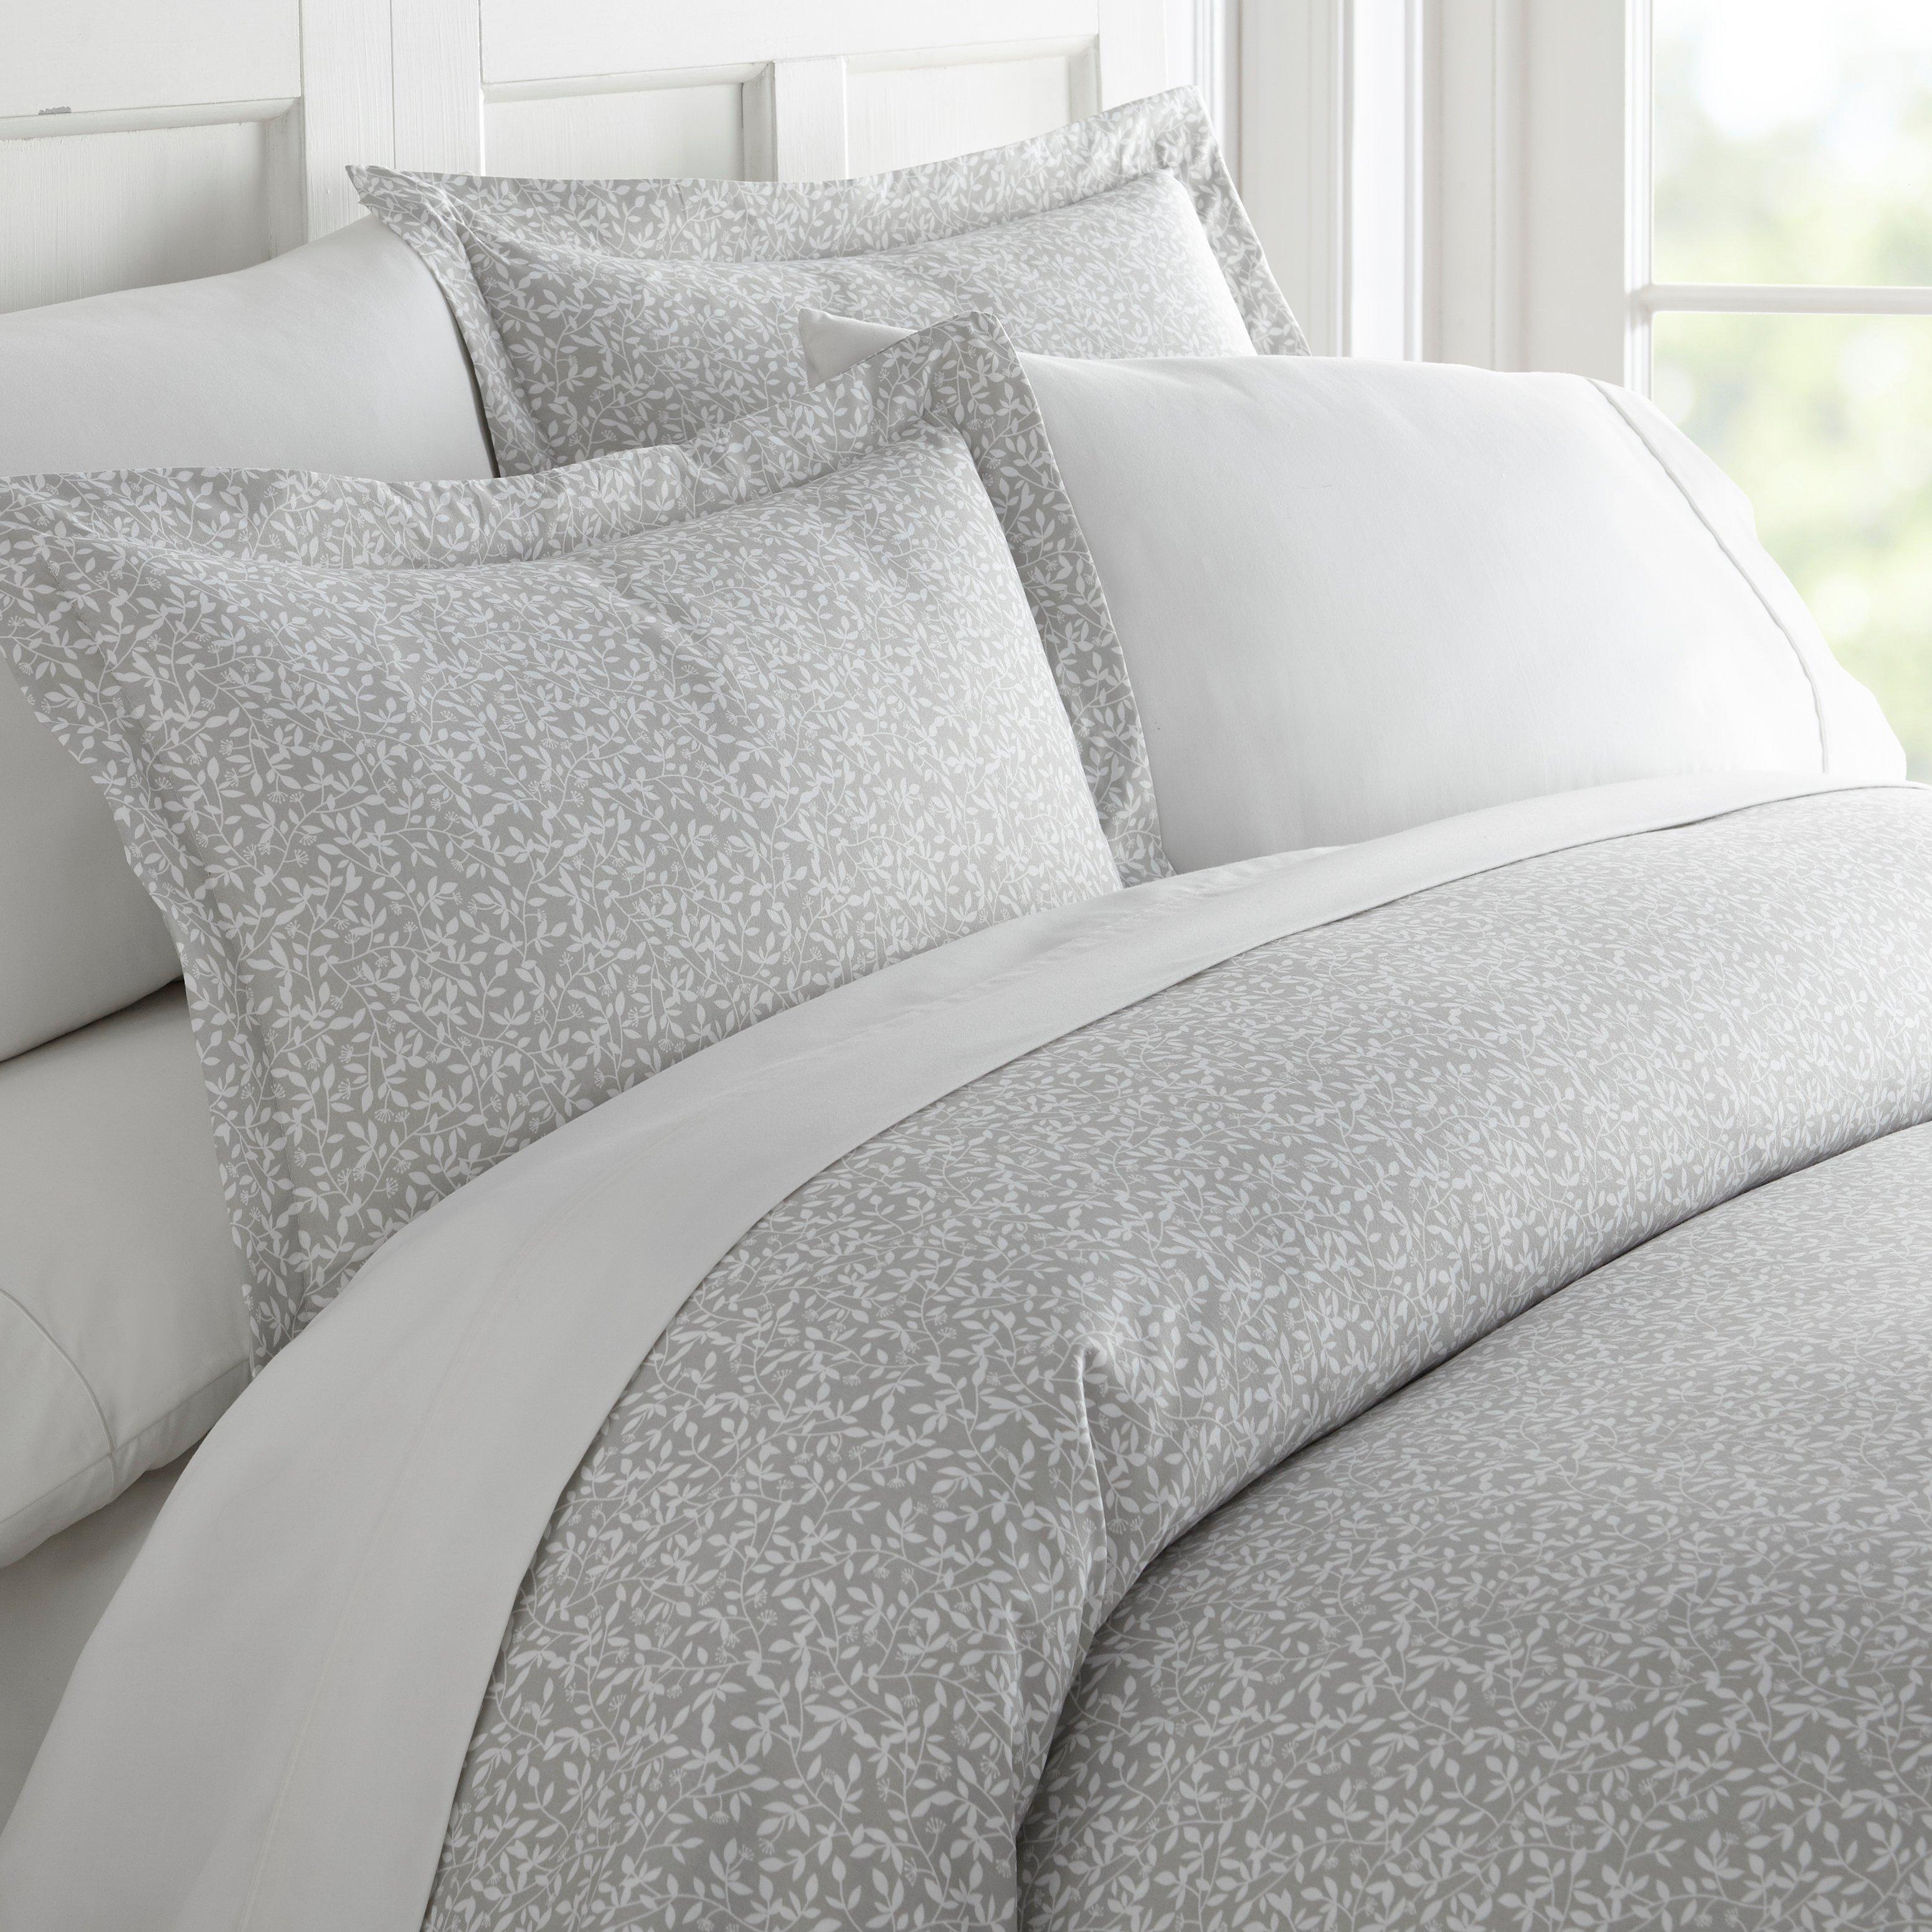 Photos - Bed Linen Home Collections Premium Soft Vine Trellis Duvet Cover Set